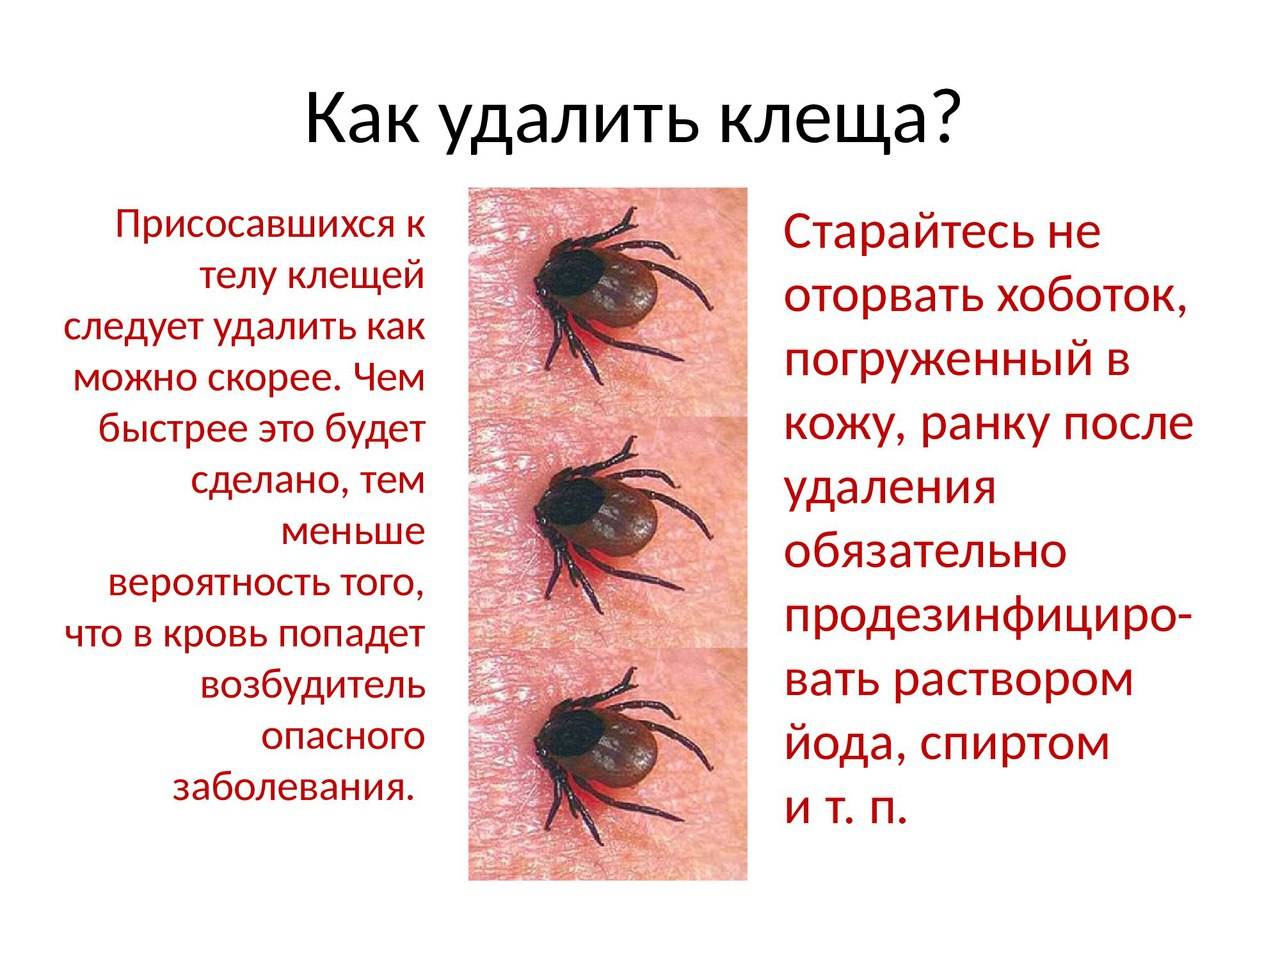 Как выглядит клещ под кожей? как правильно достать клеща, чтобы избежать осложнений? :: syl.ru